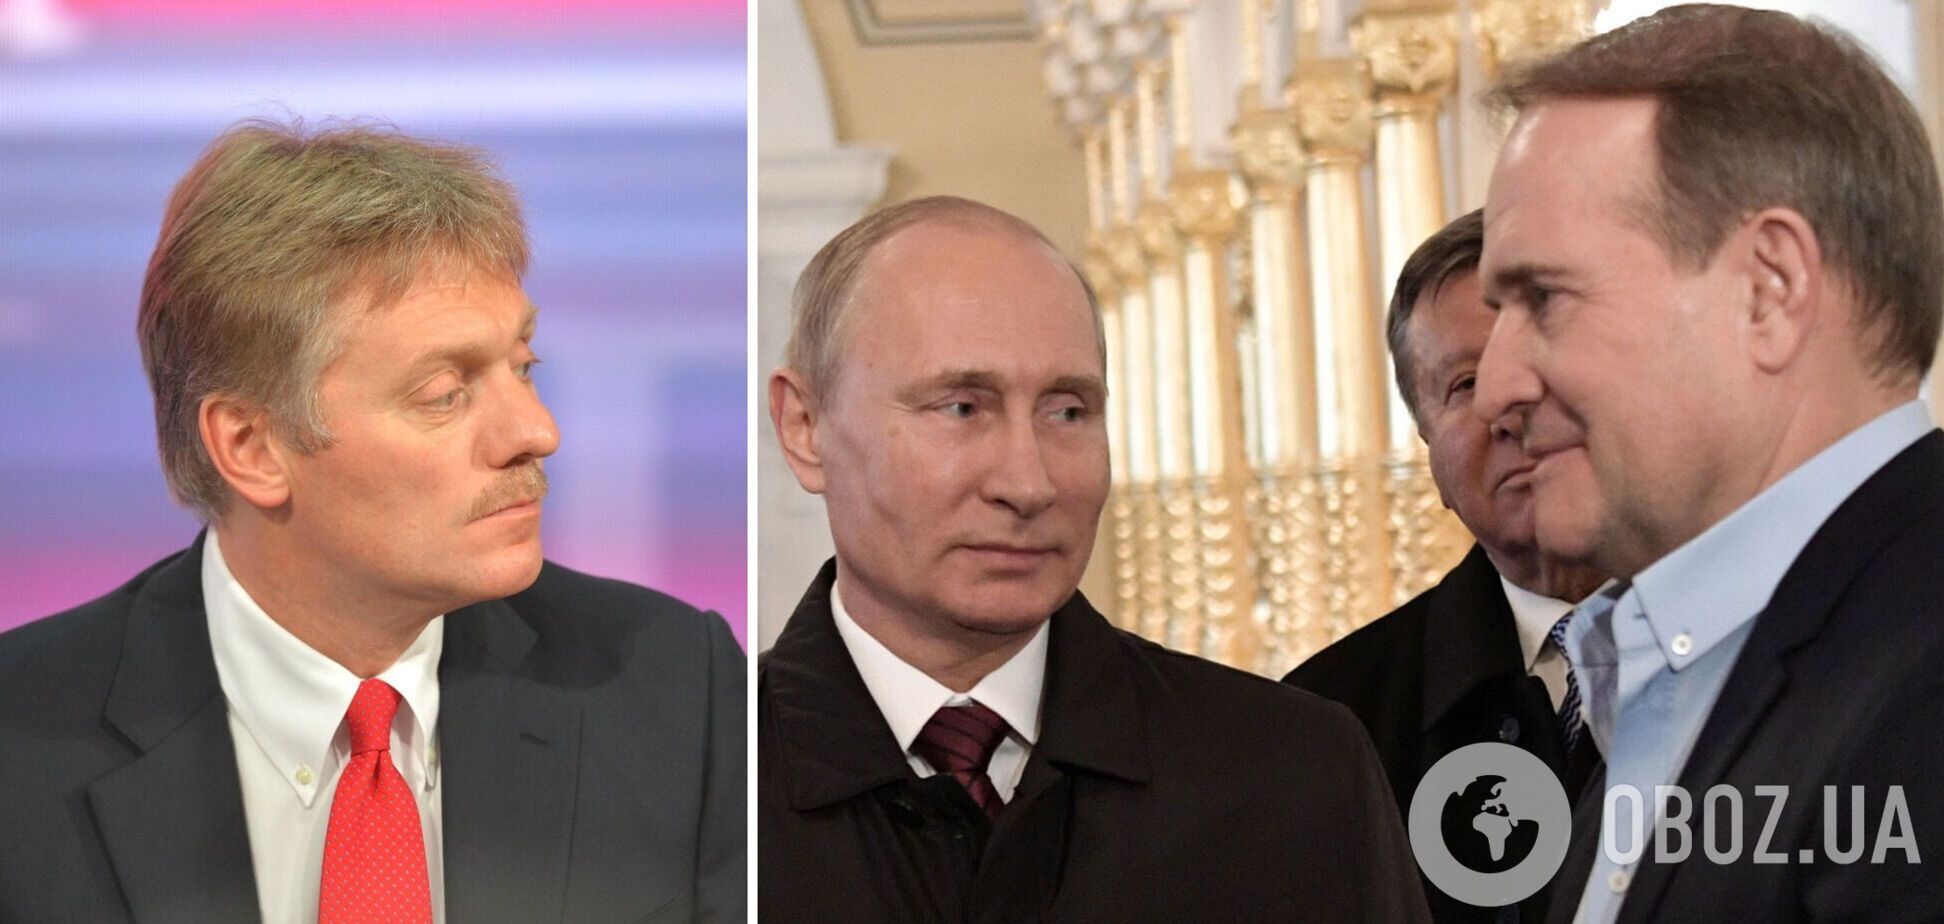 Пєсков відповів, ким є Медведчук для Путіна